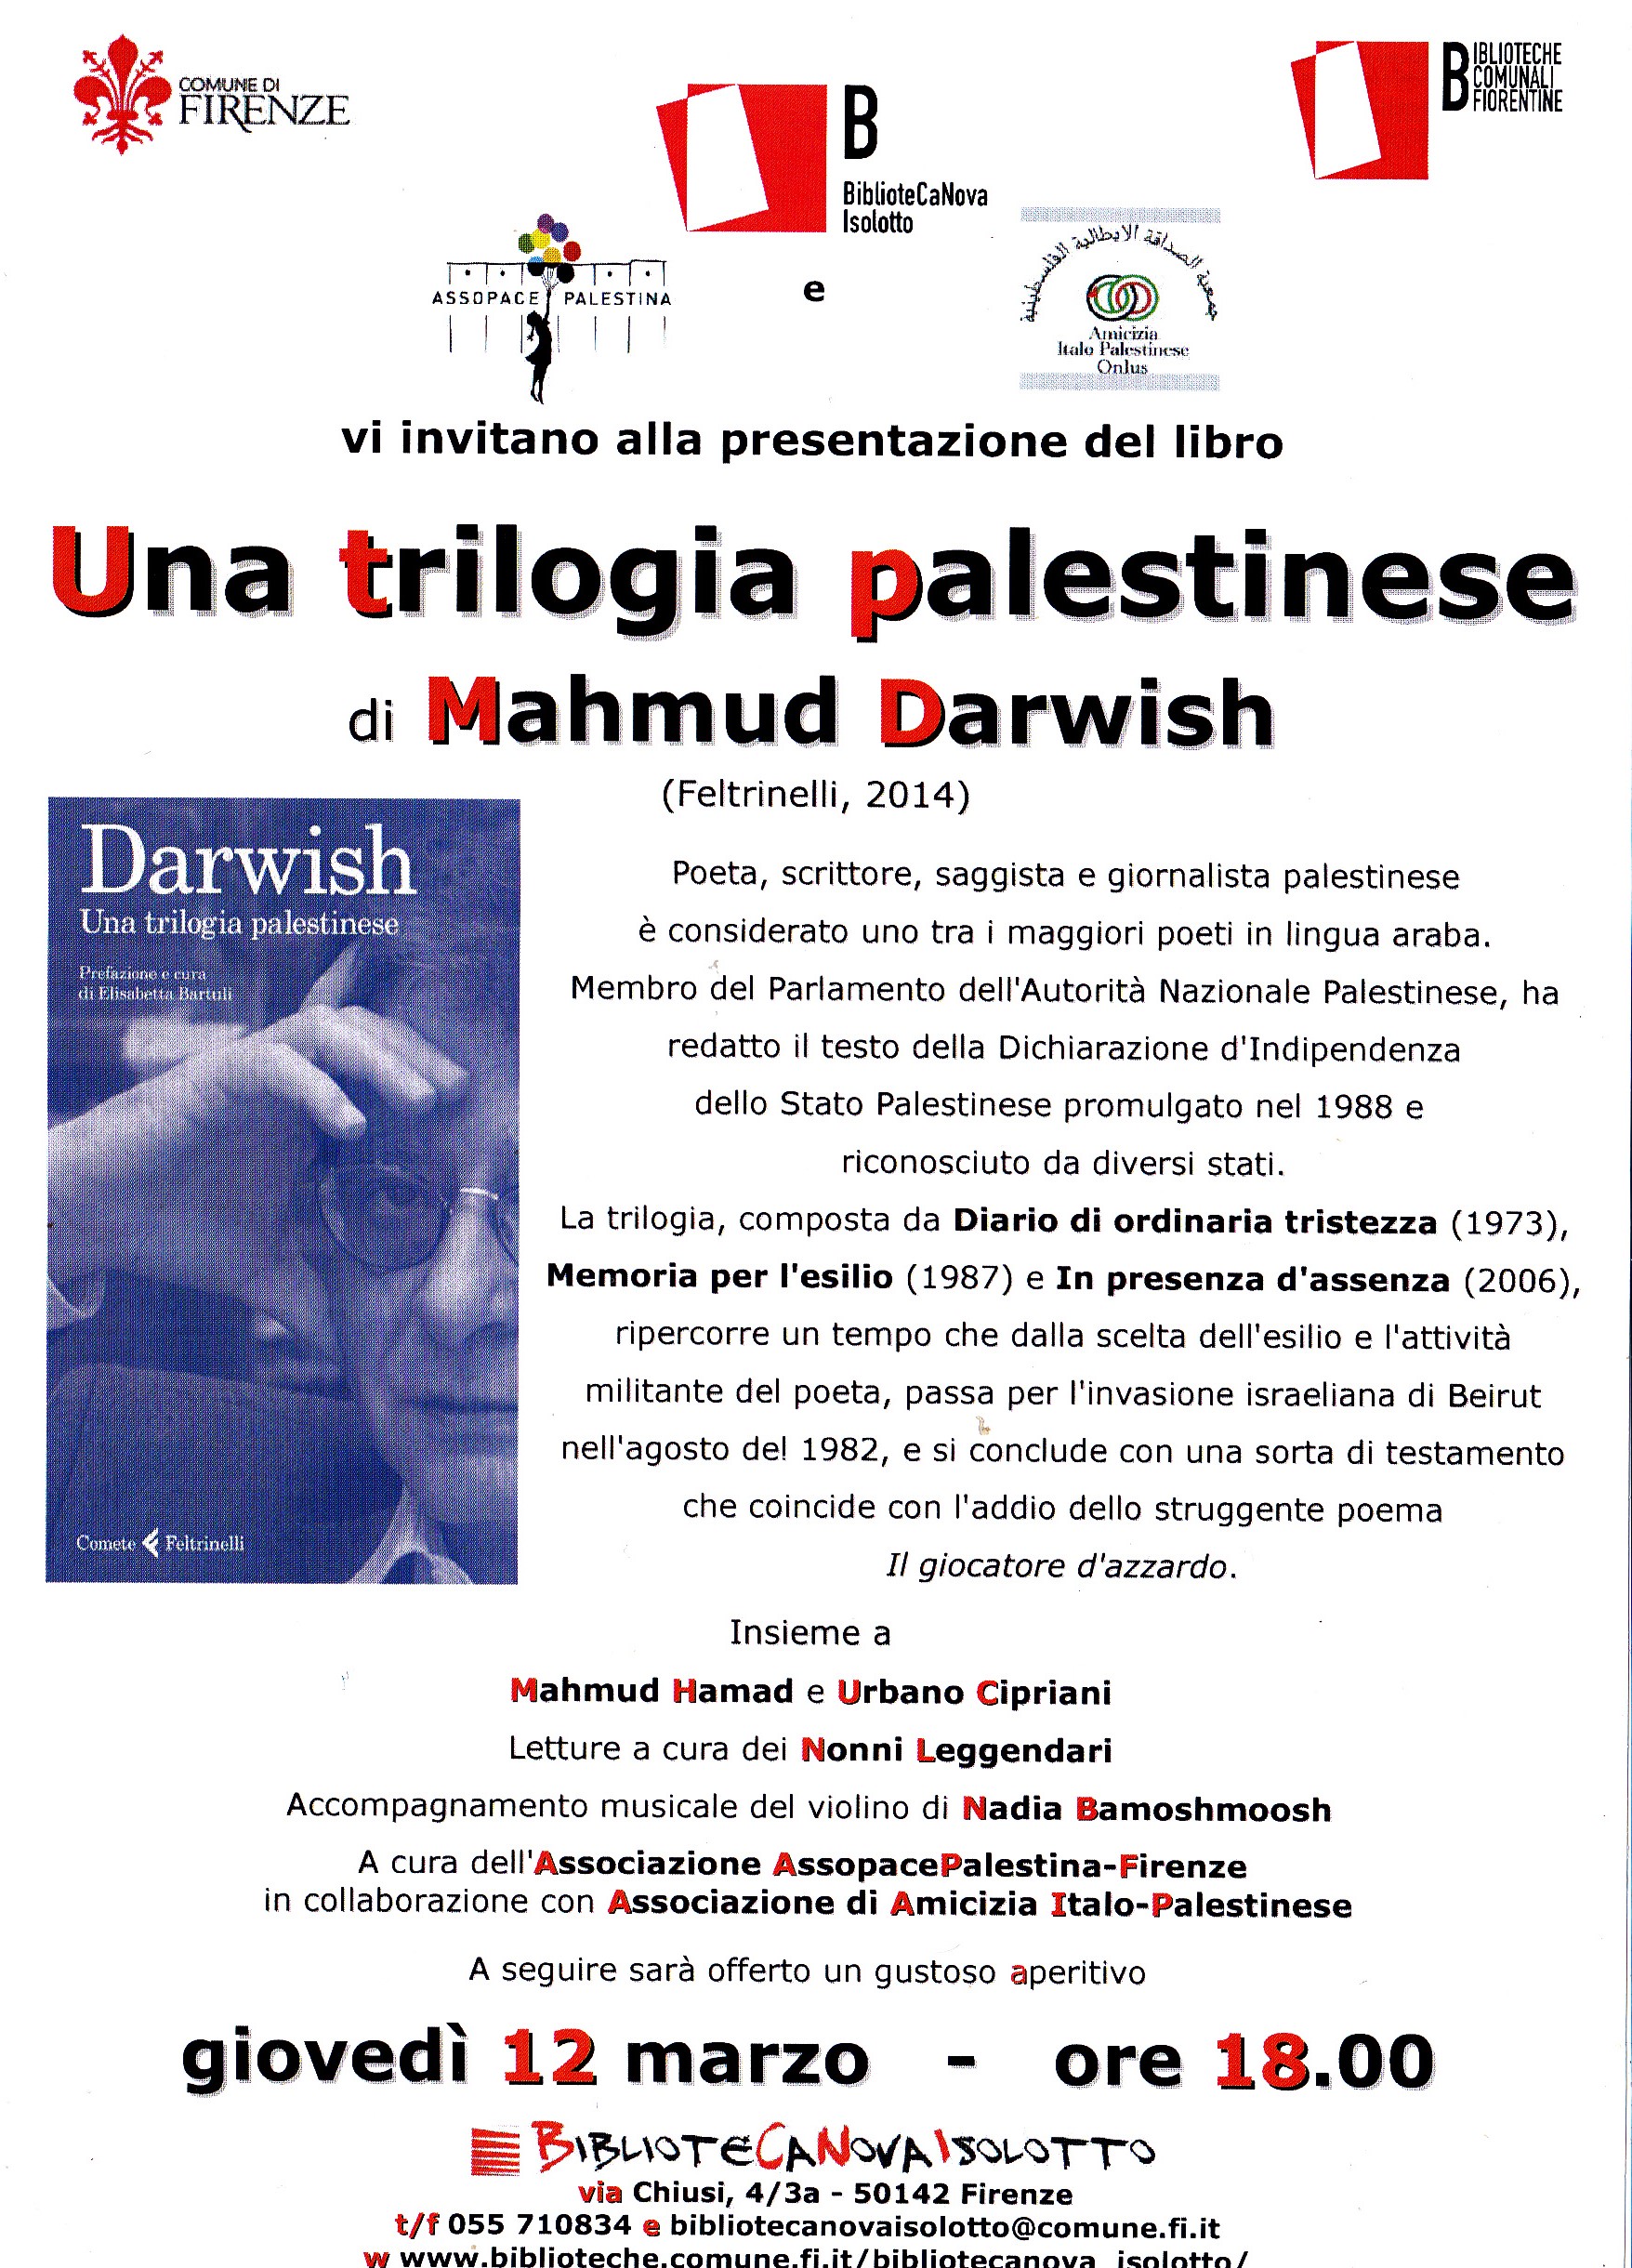 DARWISH-12-MARZO1